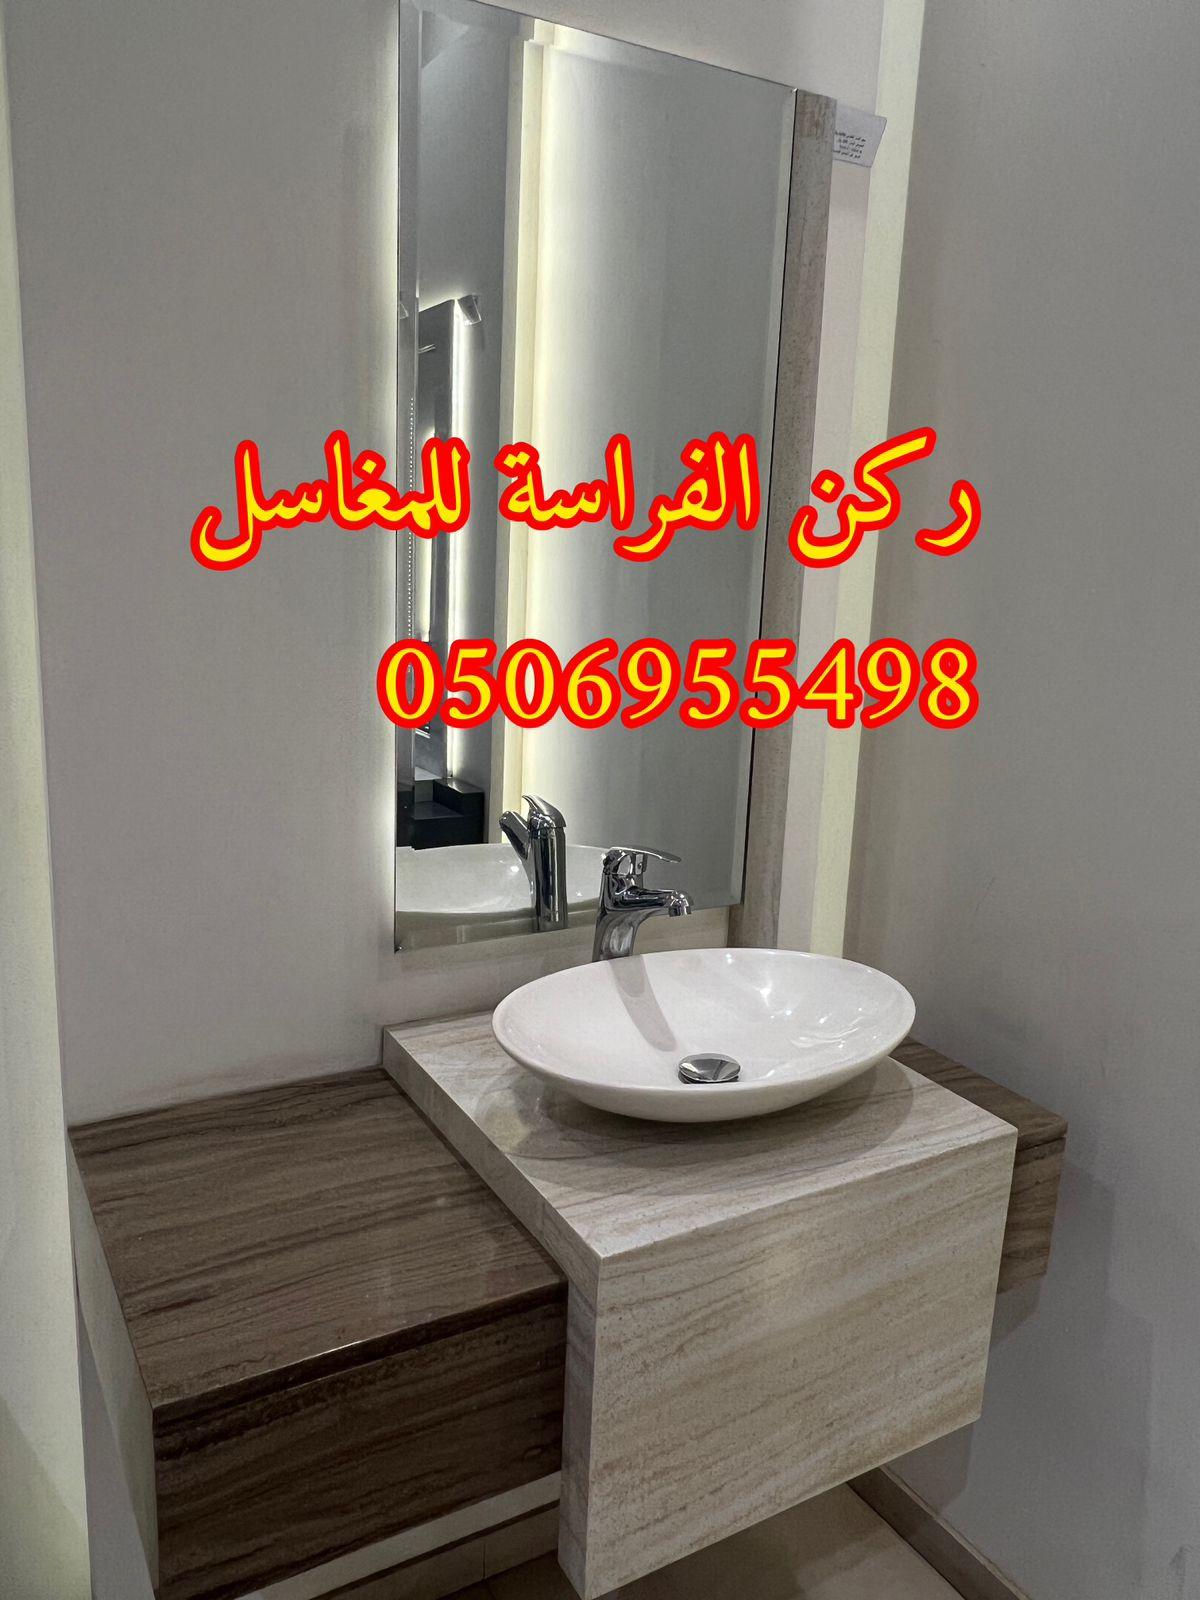 تفصيل احواض مغاسل رخام في الرياض,0506955498 868453005